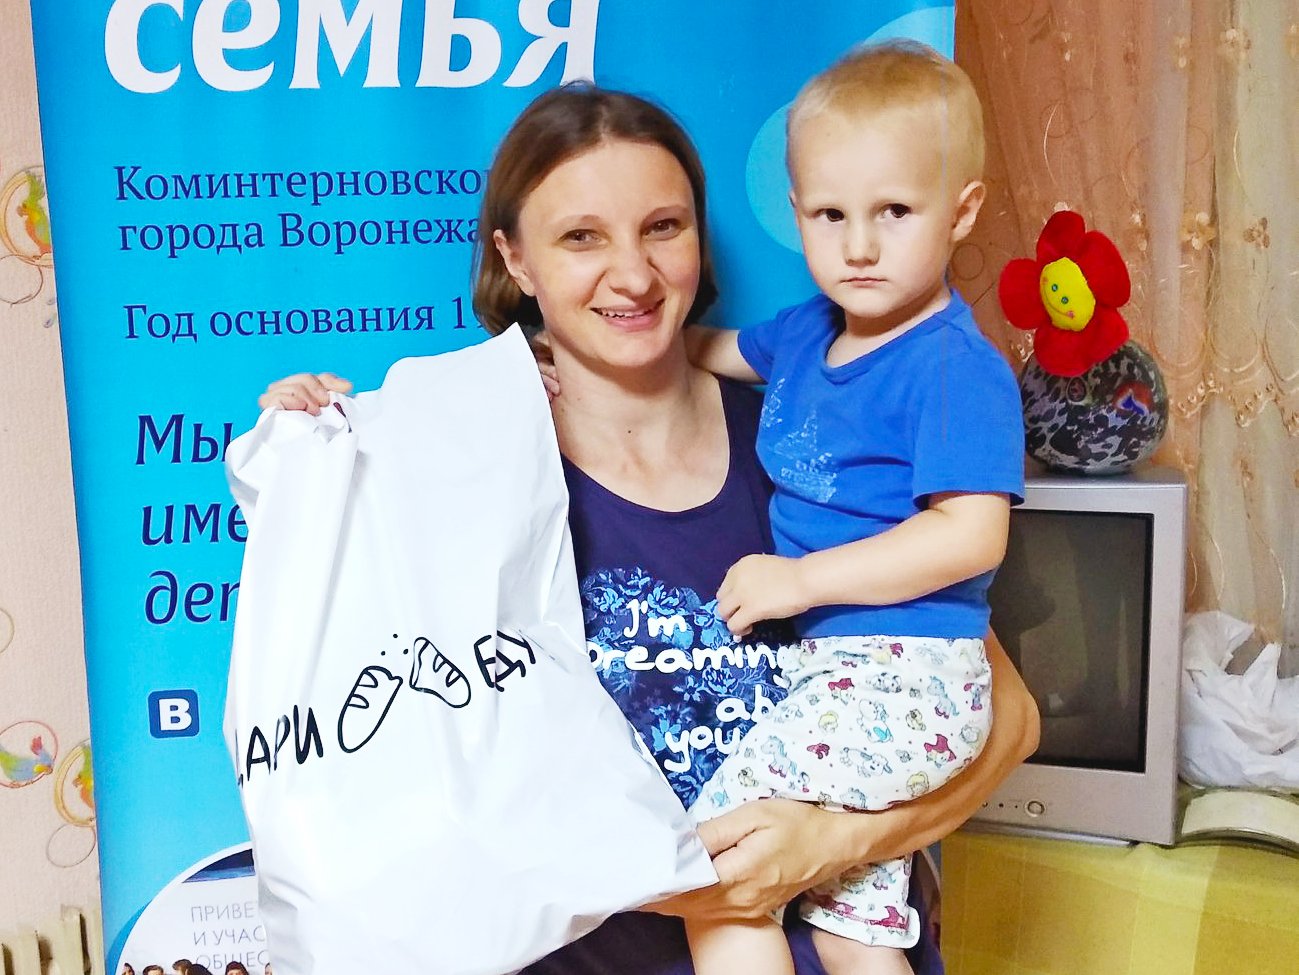 report_2018-pomosch-podopechnym-organizatsii-mnogodetnaya-semya-kominternovskogo-rayona-g-voronezha_20180927021500.png